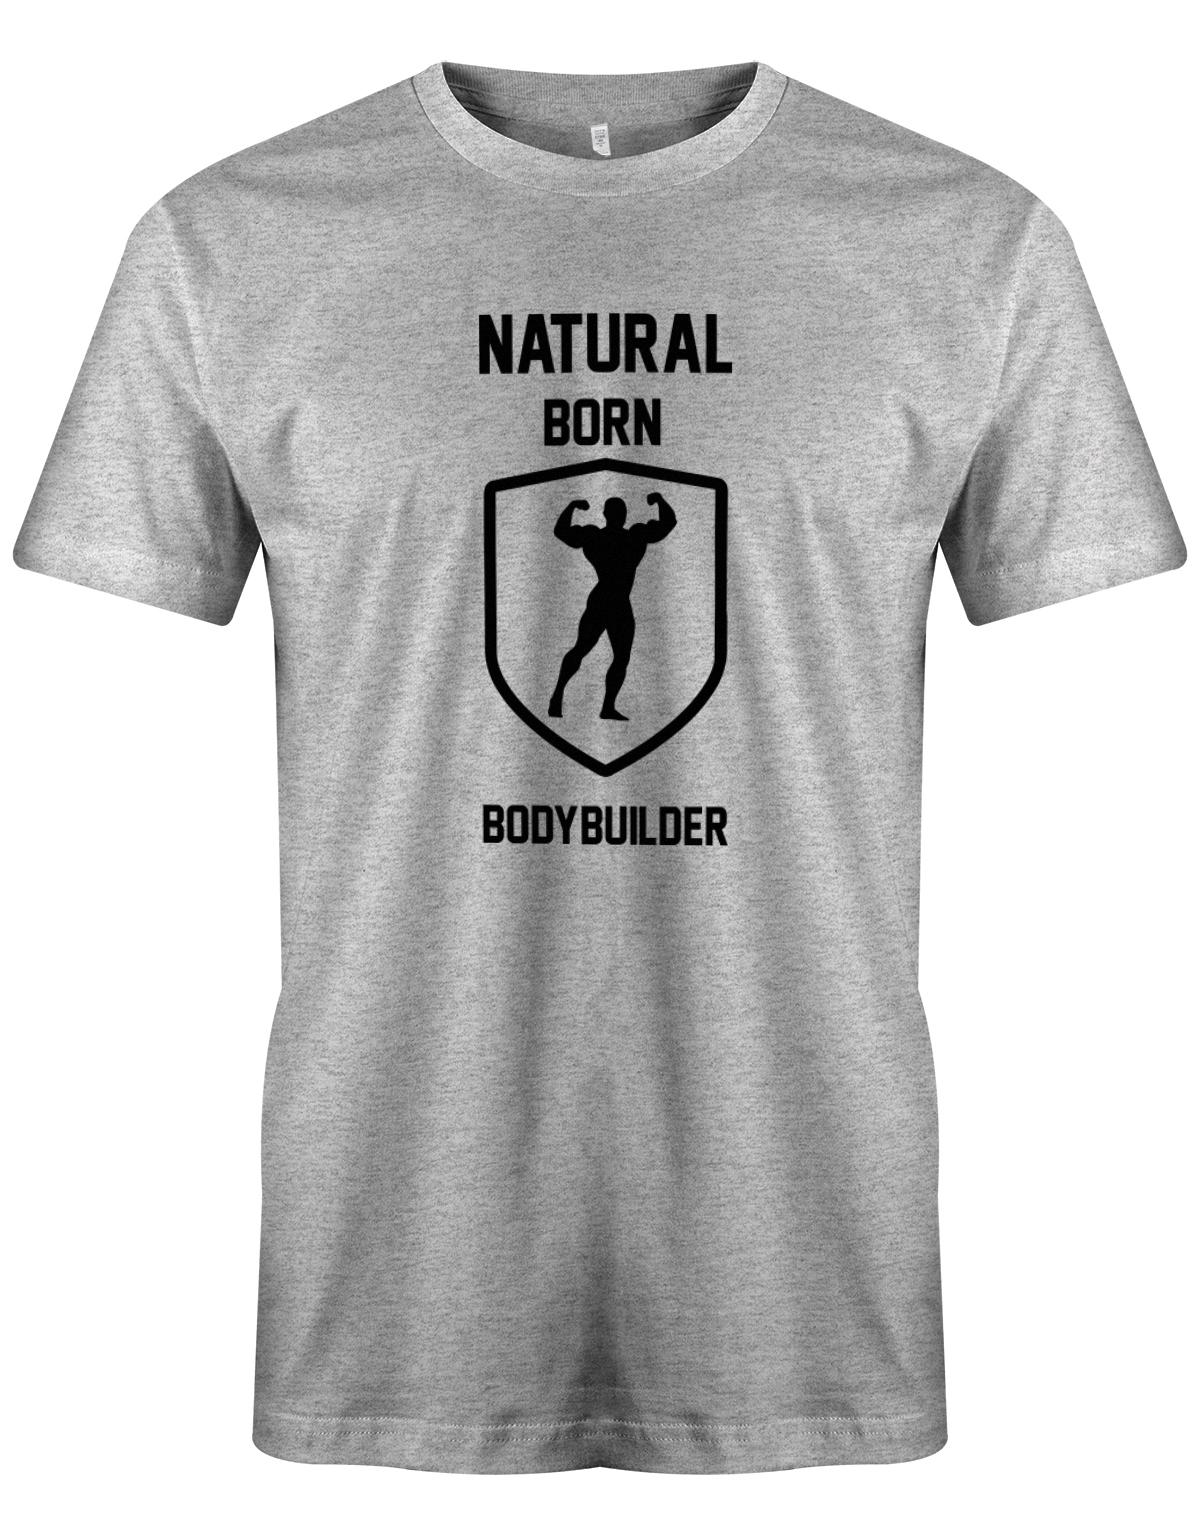 Natural-born-Bodybuilder-herren-Shirt-Grau